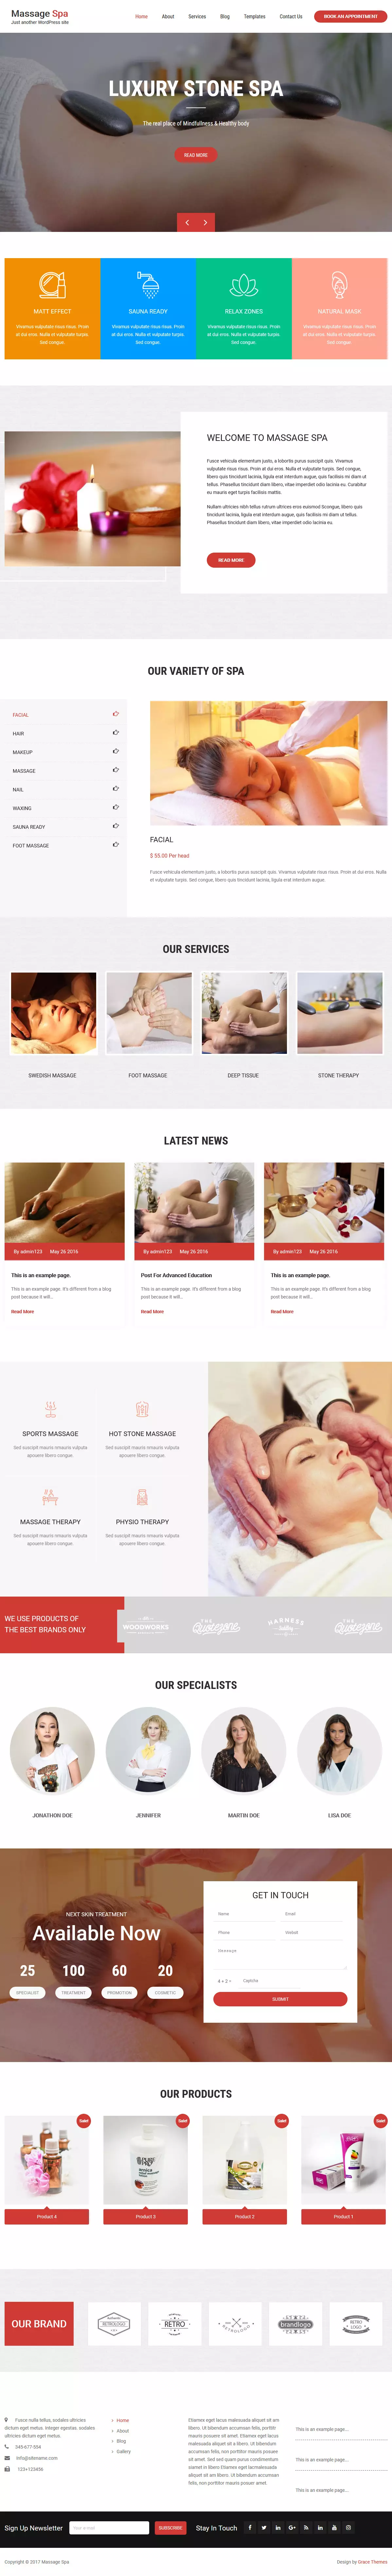 Massage Spa - Best Free Spa and Beauty WordPress Theme